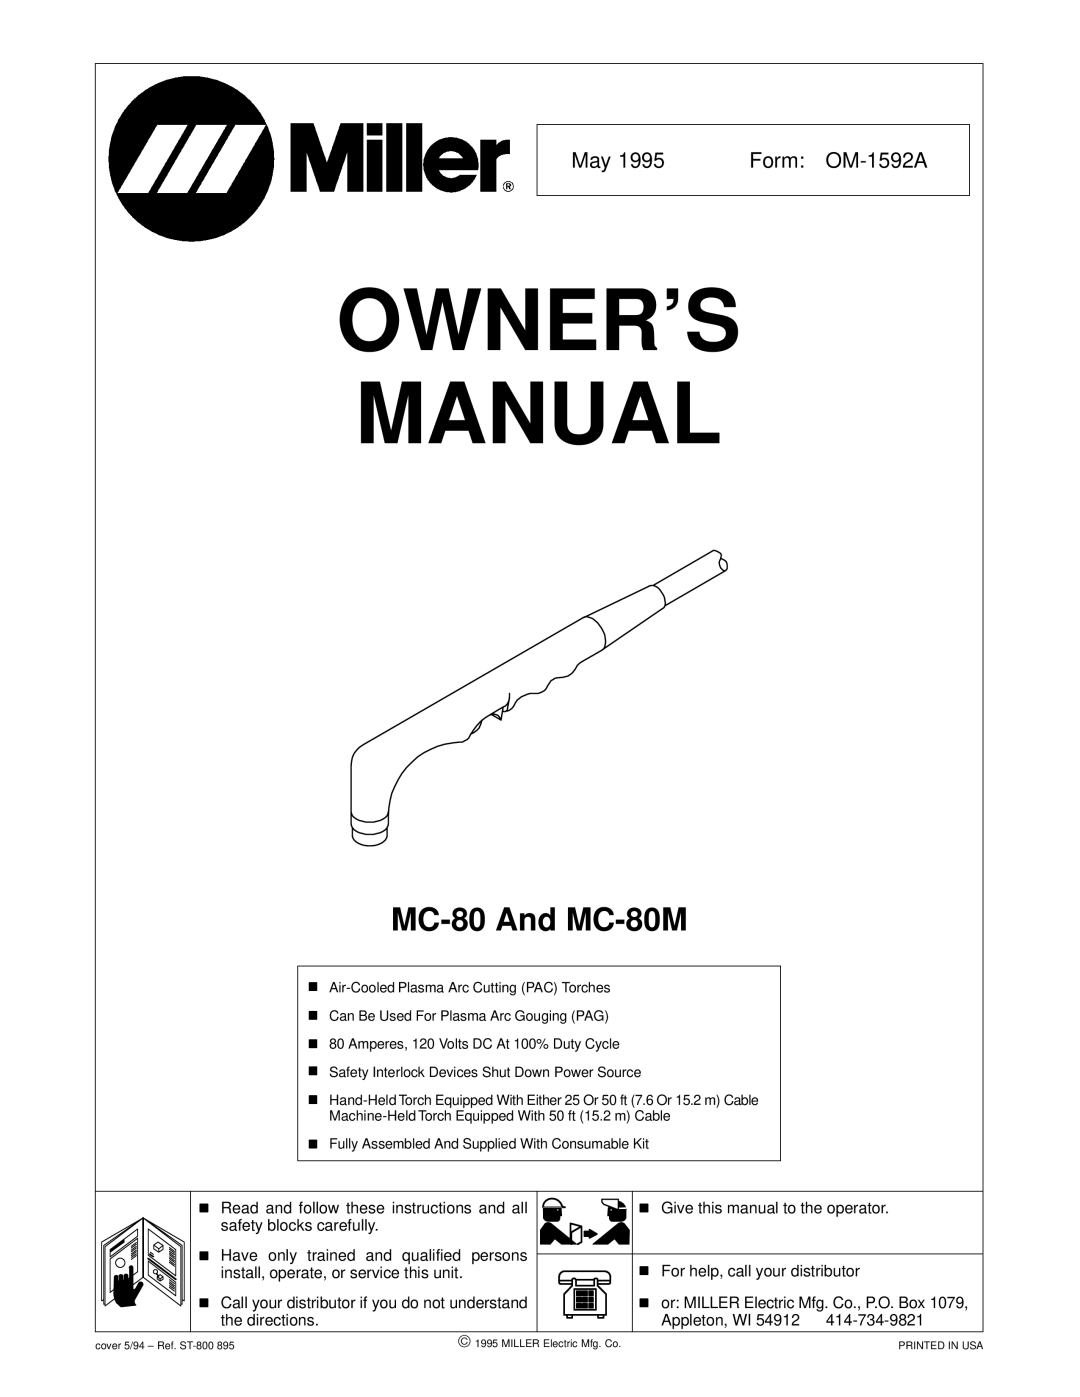 Miller Electric MC-80M owner manual OWNER’S Manual 